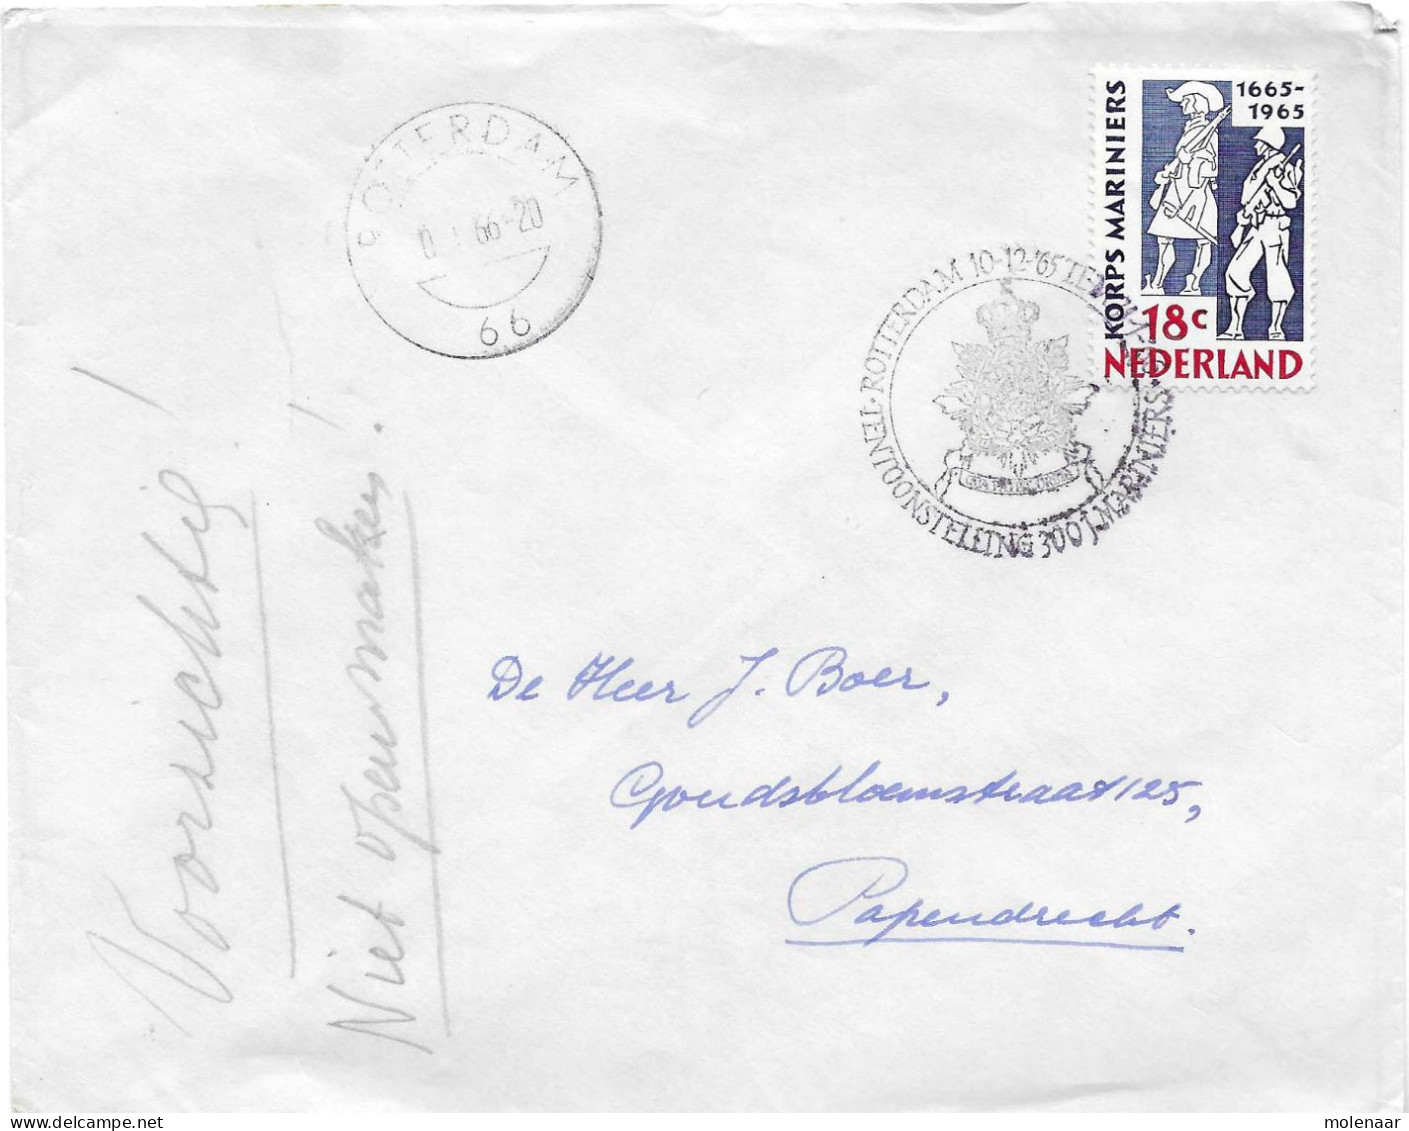 Postzegels > Europa > Nederland > Periode 1949-1980  > 1960-69 > Brief Uit 1965 100 Jaar Korps Mariniers (17716) - Lettres & Documents